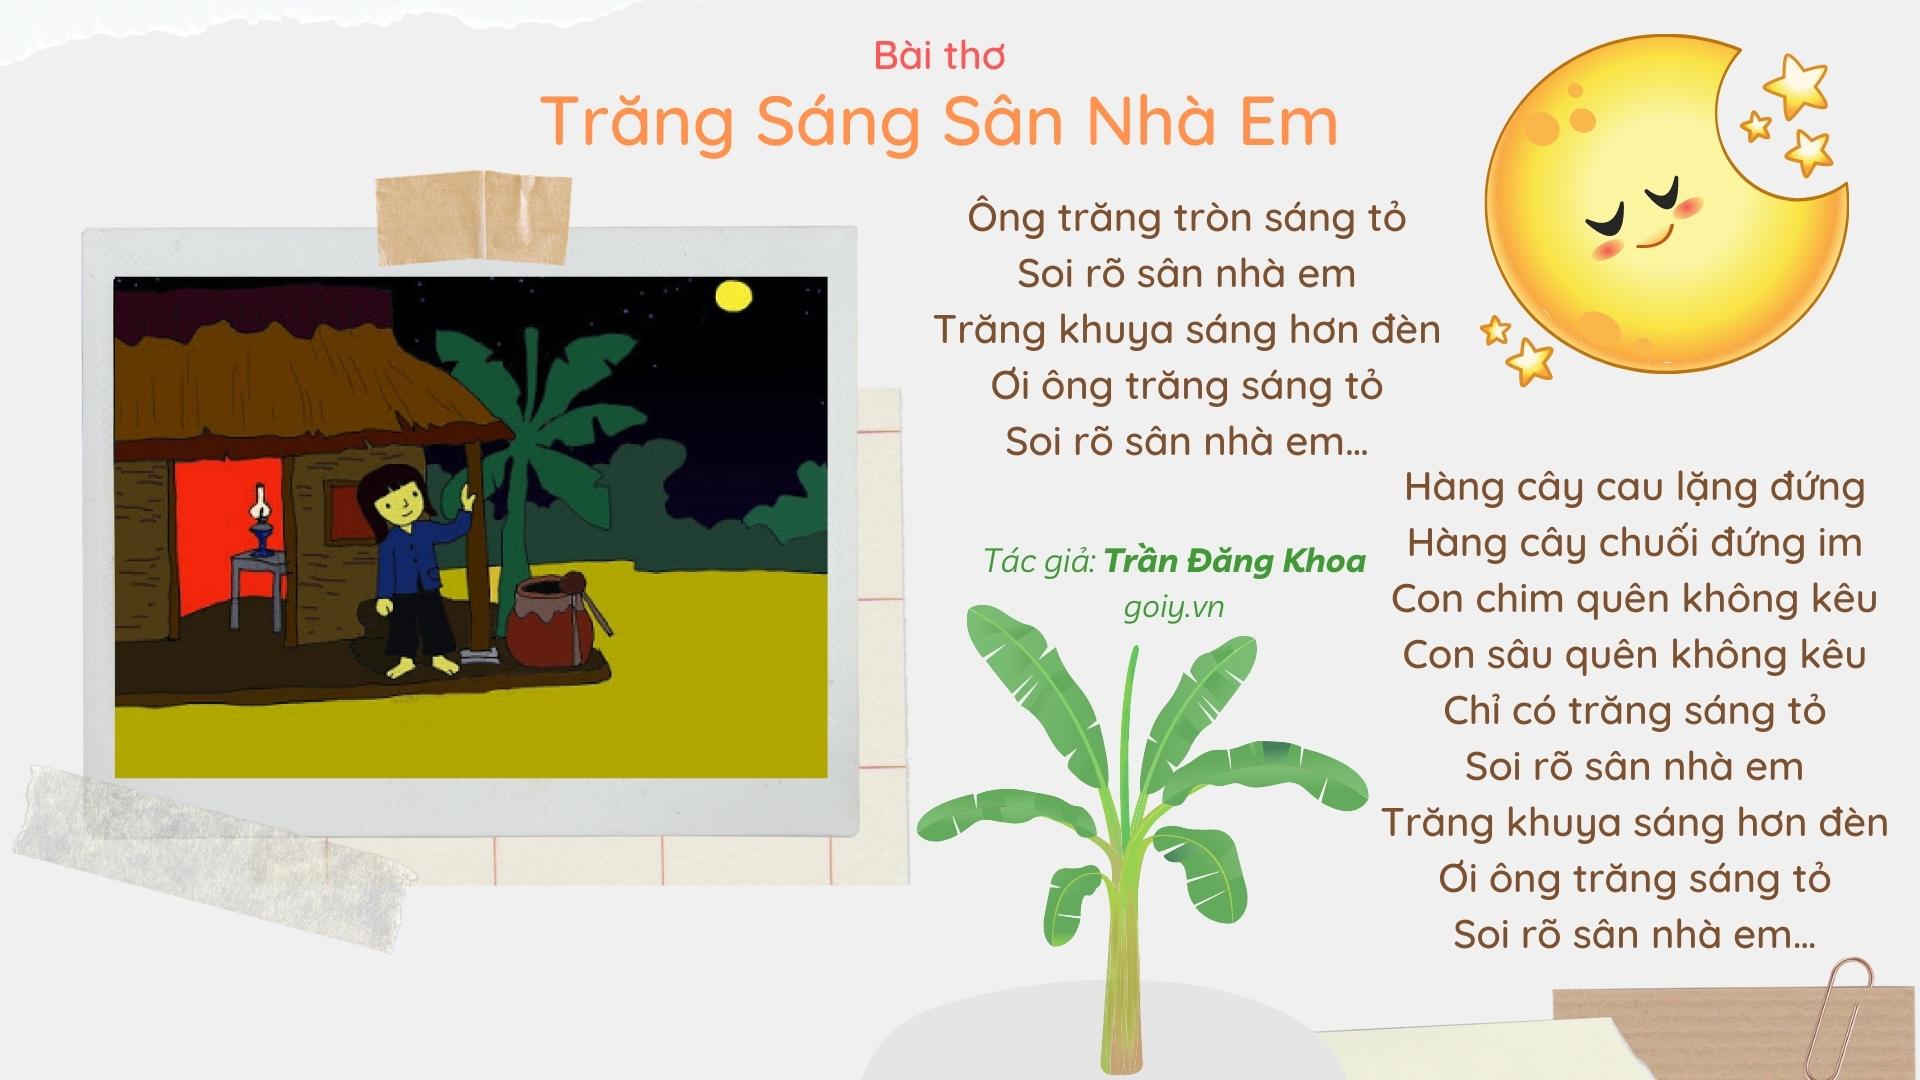 Bài thơ Trăng sáng sân nhà em (Trần Đăng Khoa)